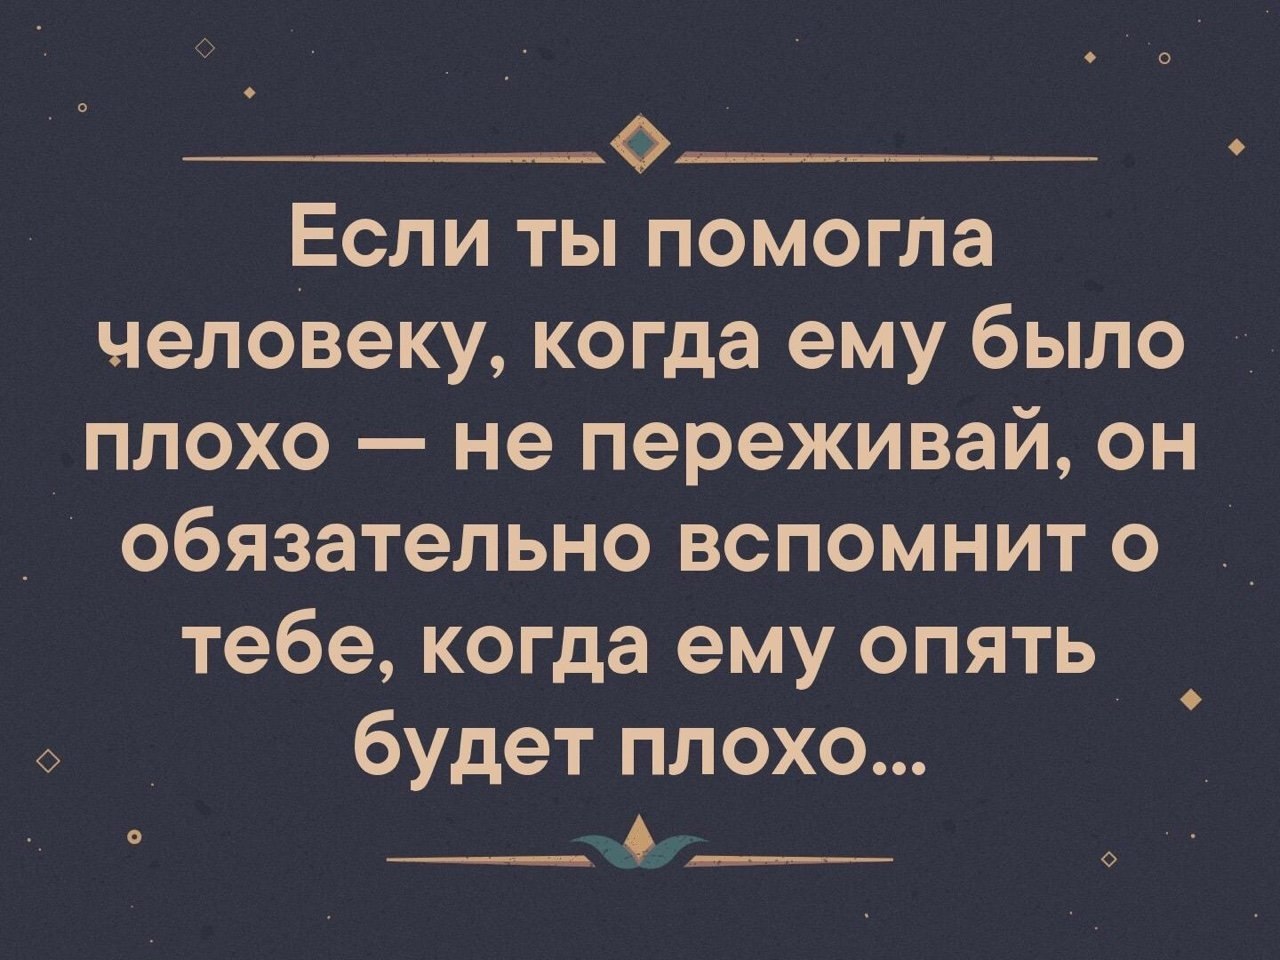  ,  .© - 27  2019  18:59